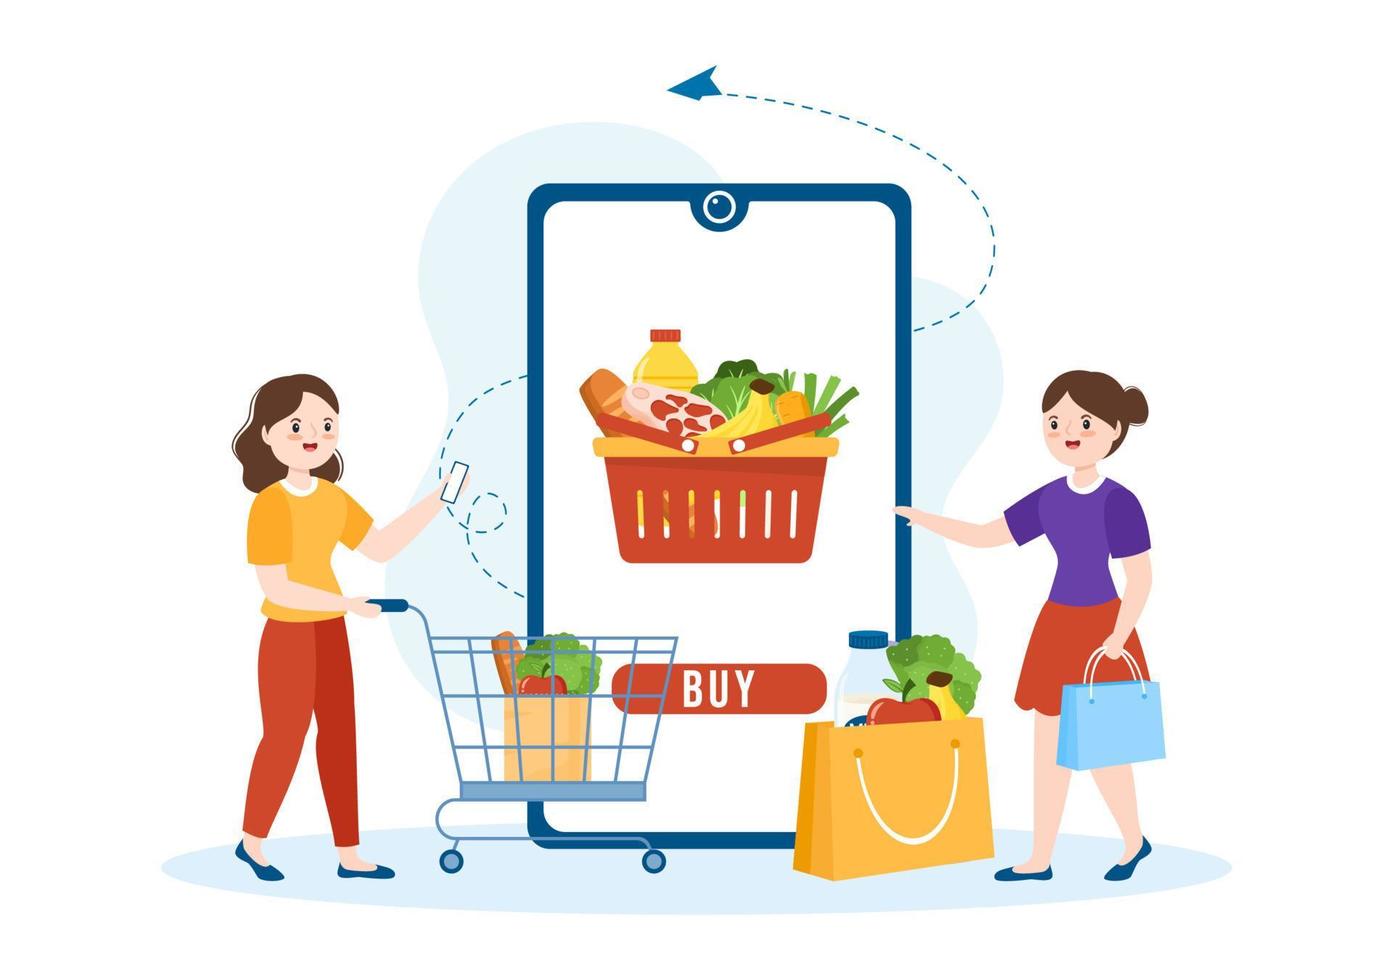 mercearia ou supermercado on-line para encomendar necessidades diárias ou alimentos através do aplicativo em ilustração de modelos desenhados à mão de desenhos animados planos vetor